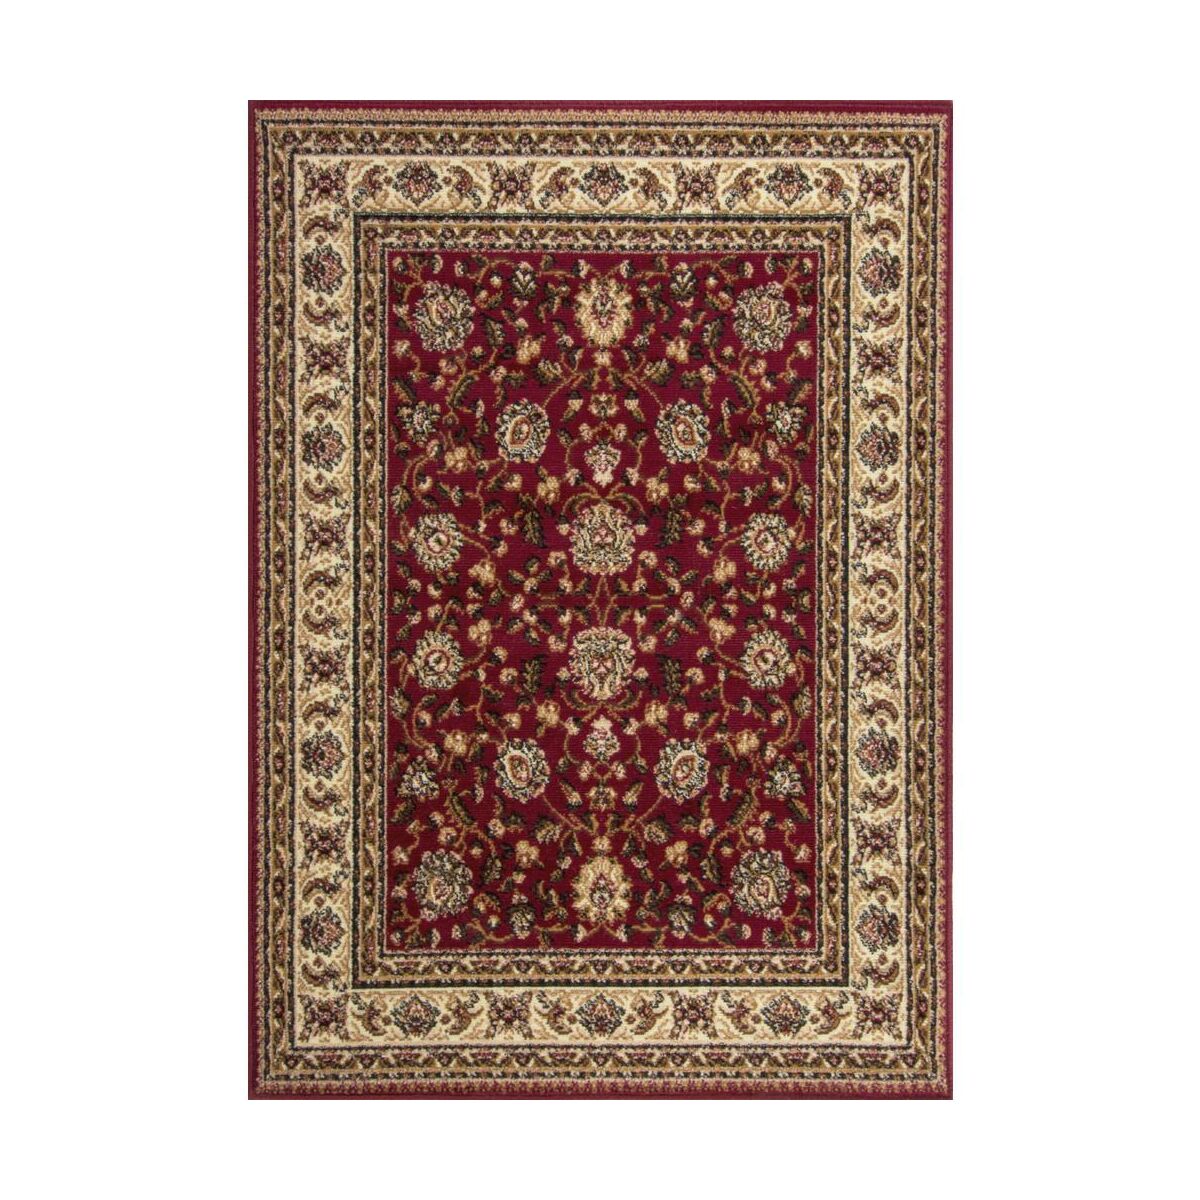 Dywan Orient czerwony 200 x 300 cm